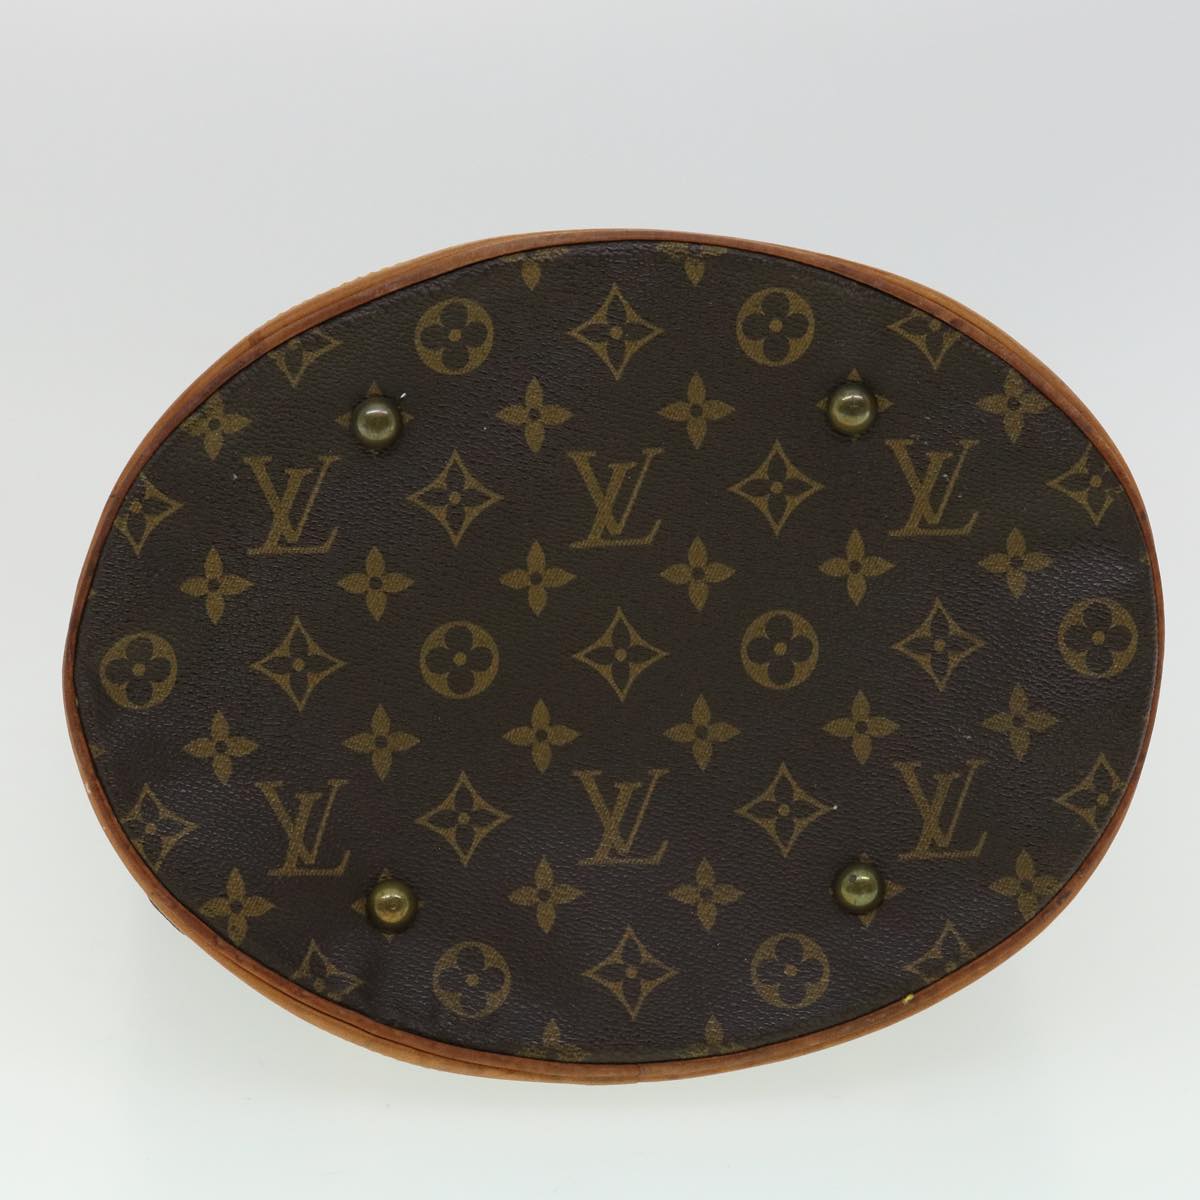 Authentic Louis Vuitton Monogram Bucket GM Shoulder Bag M42236